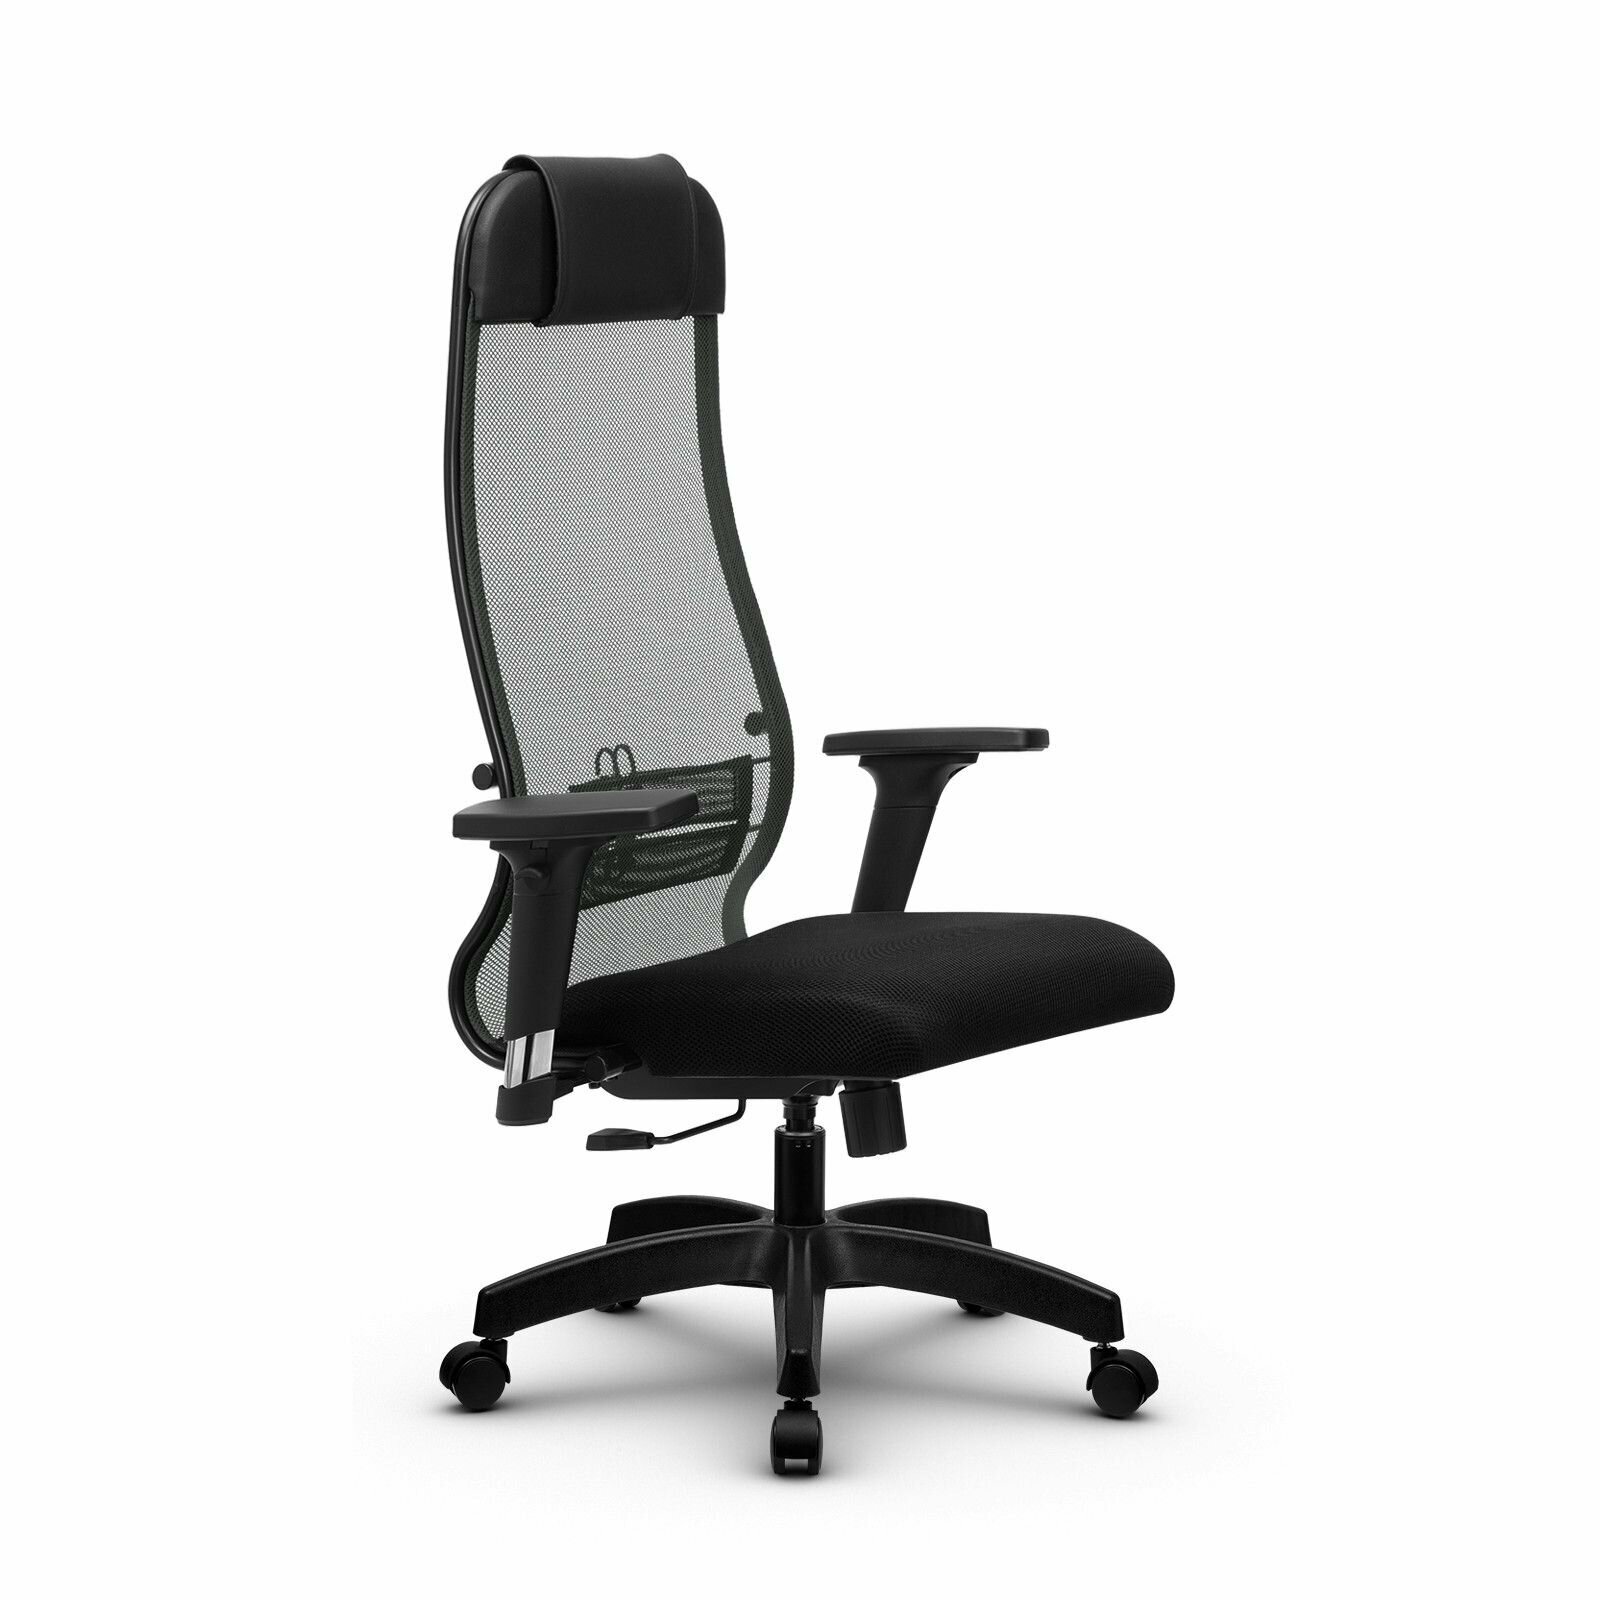 Компьютерное офисное кресло Metta Комплект 18/2D, осн. 001 (17831), Темно-серое/Черное